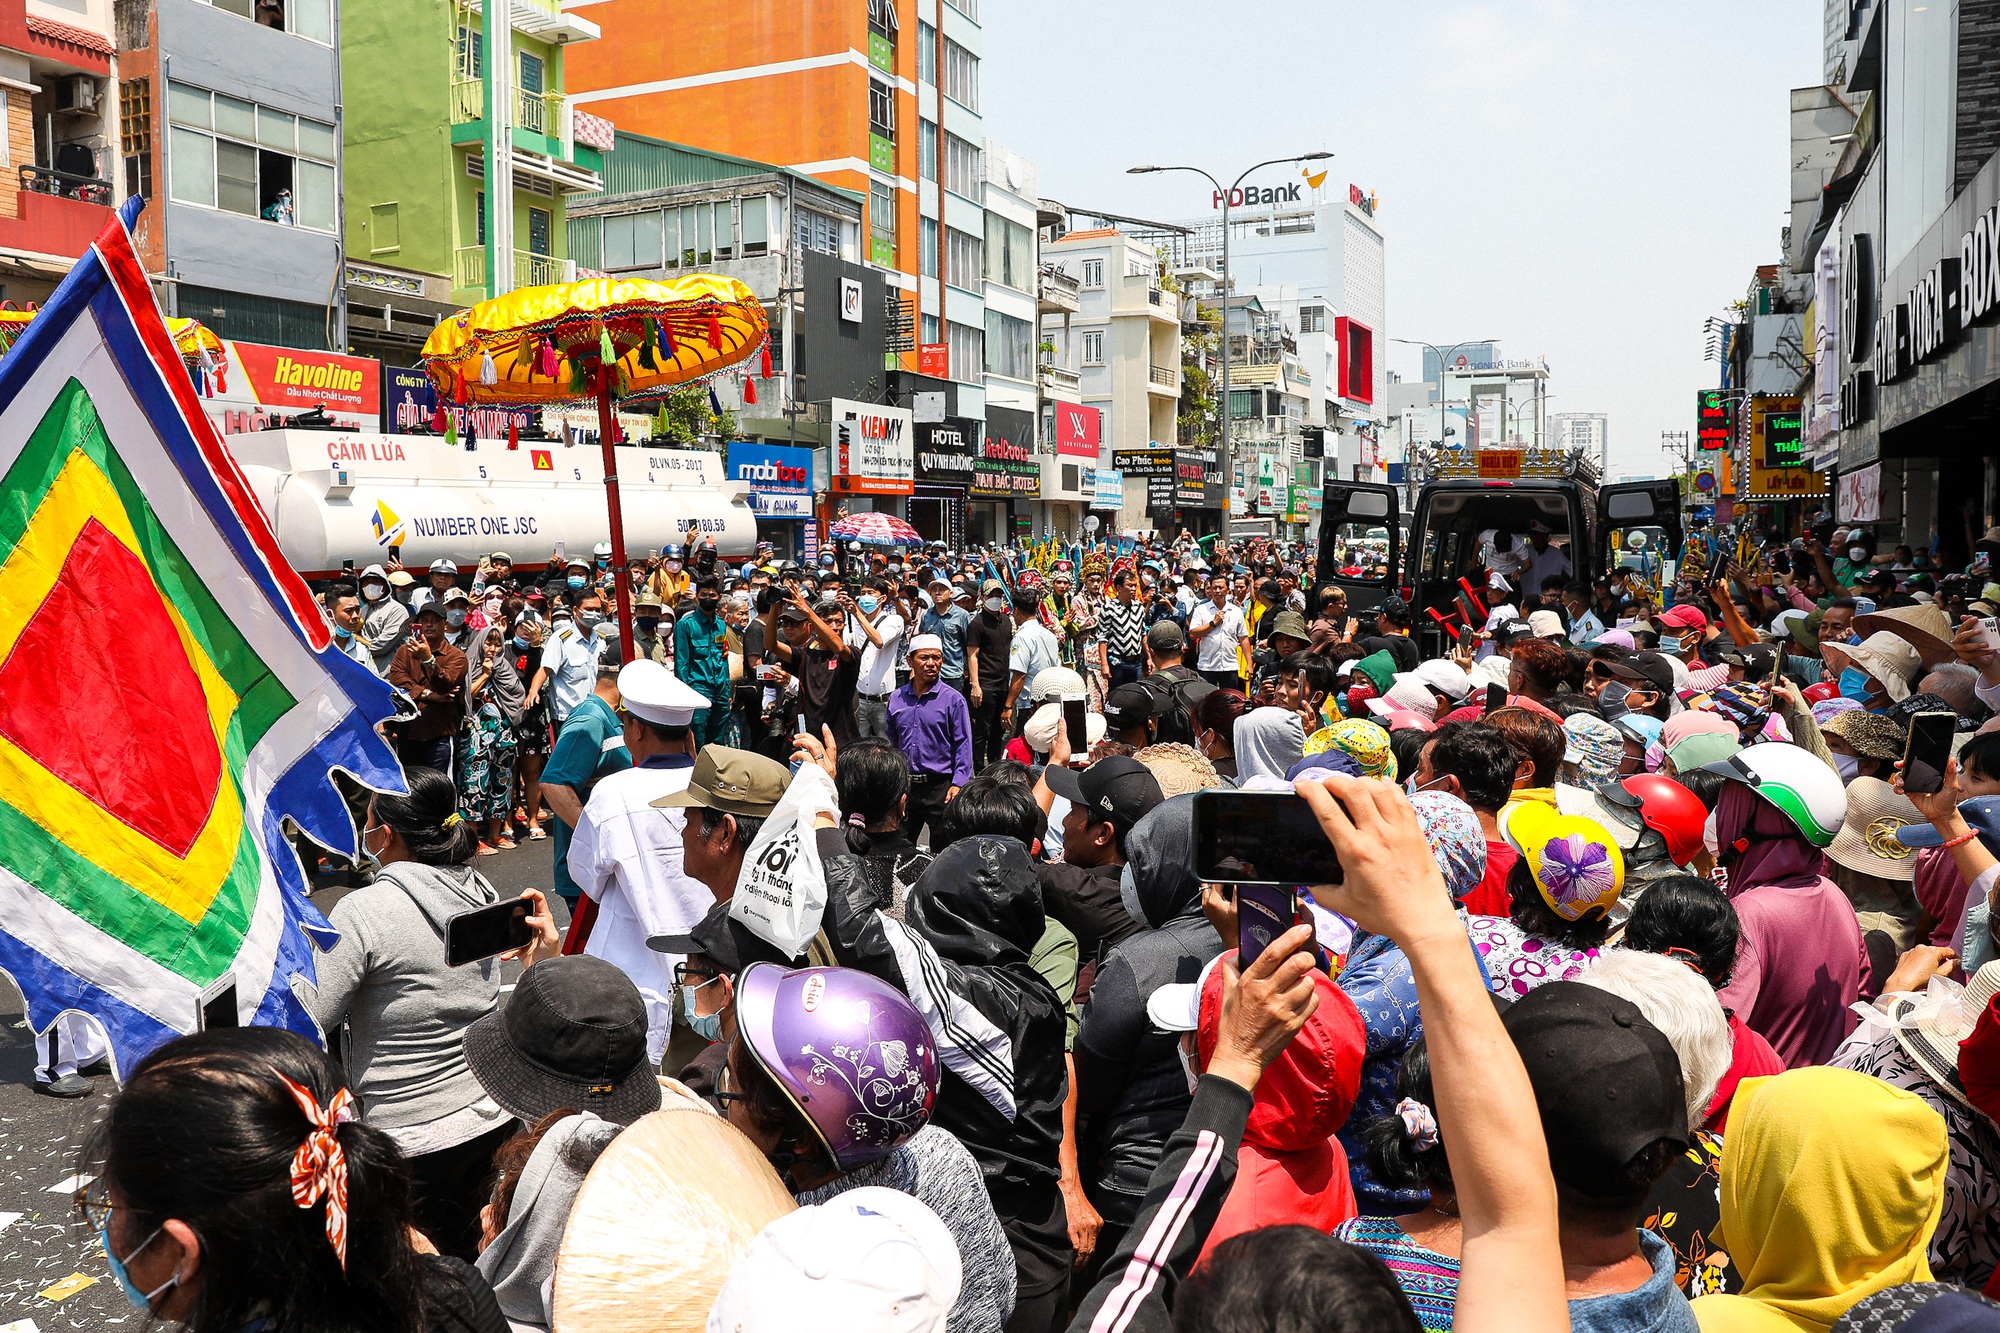 Hàng nghìn người tập trung kín đường, cảnh chen lấn hỗn loạn tại lễ đưa tang NS Vũ Linh - Ảnh 13.